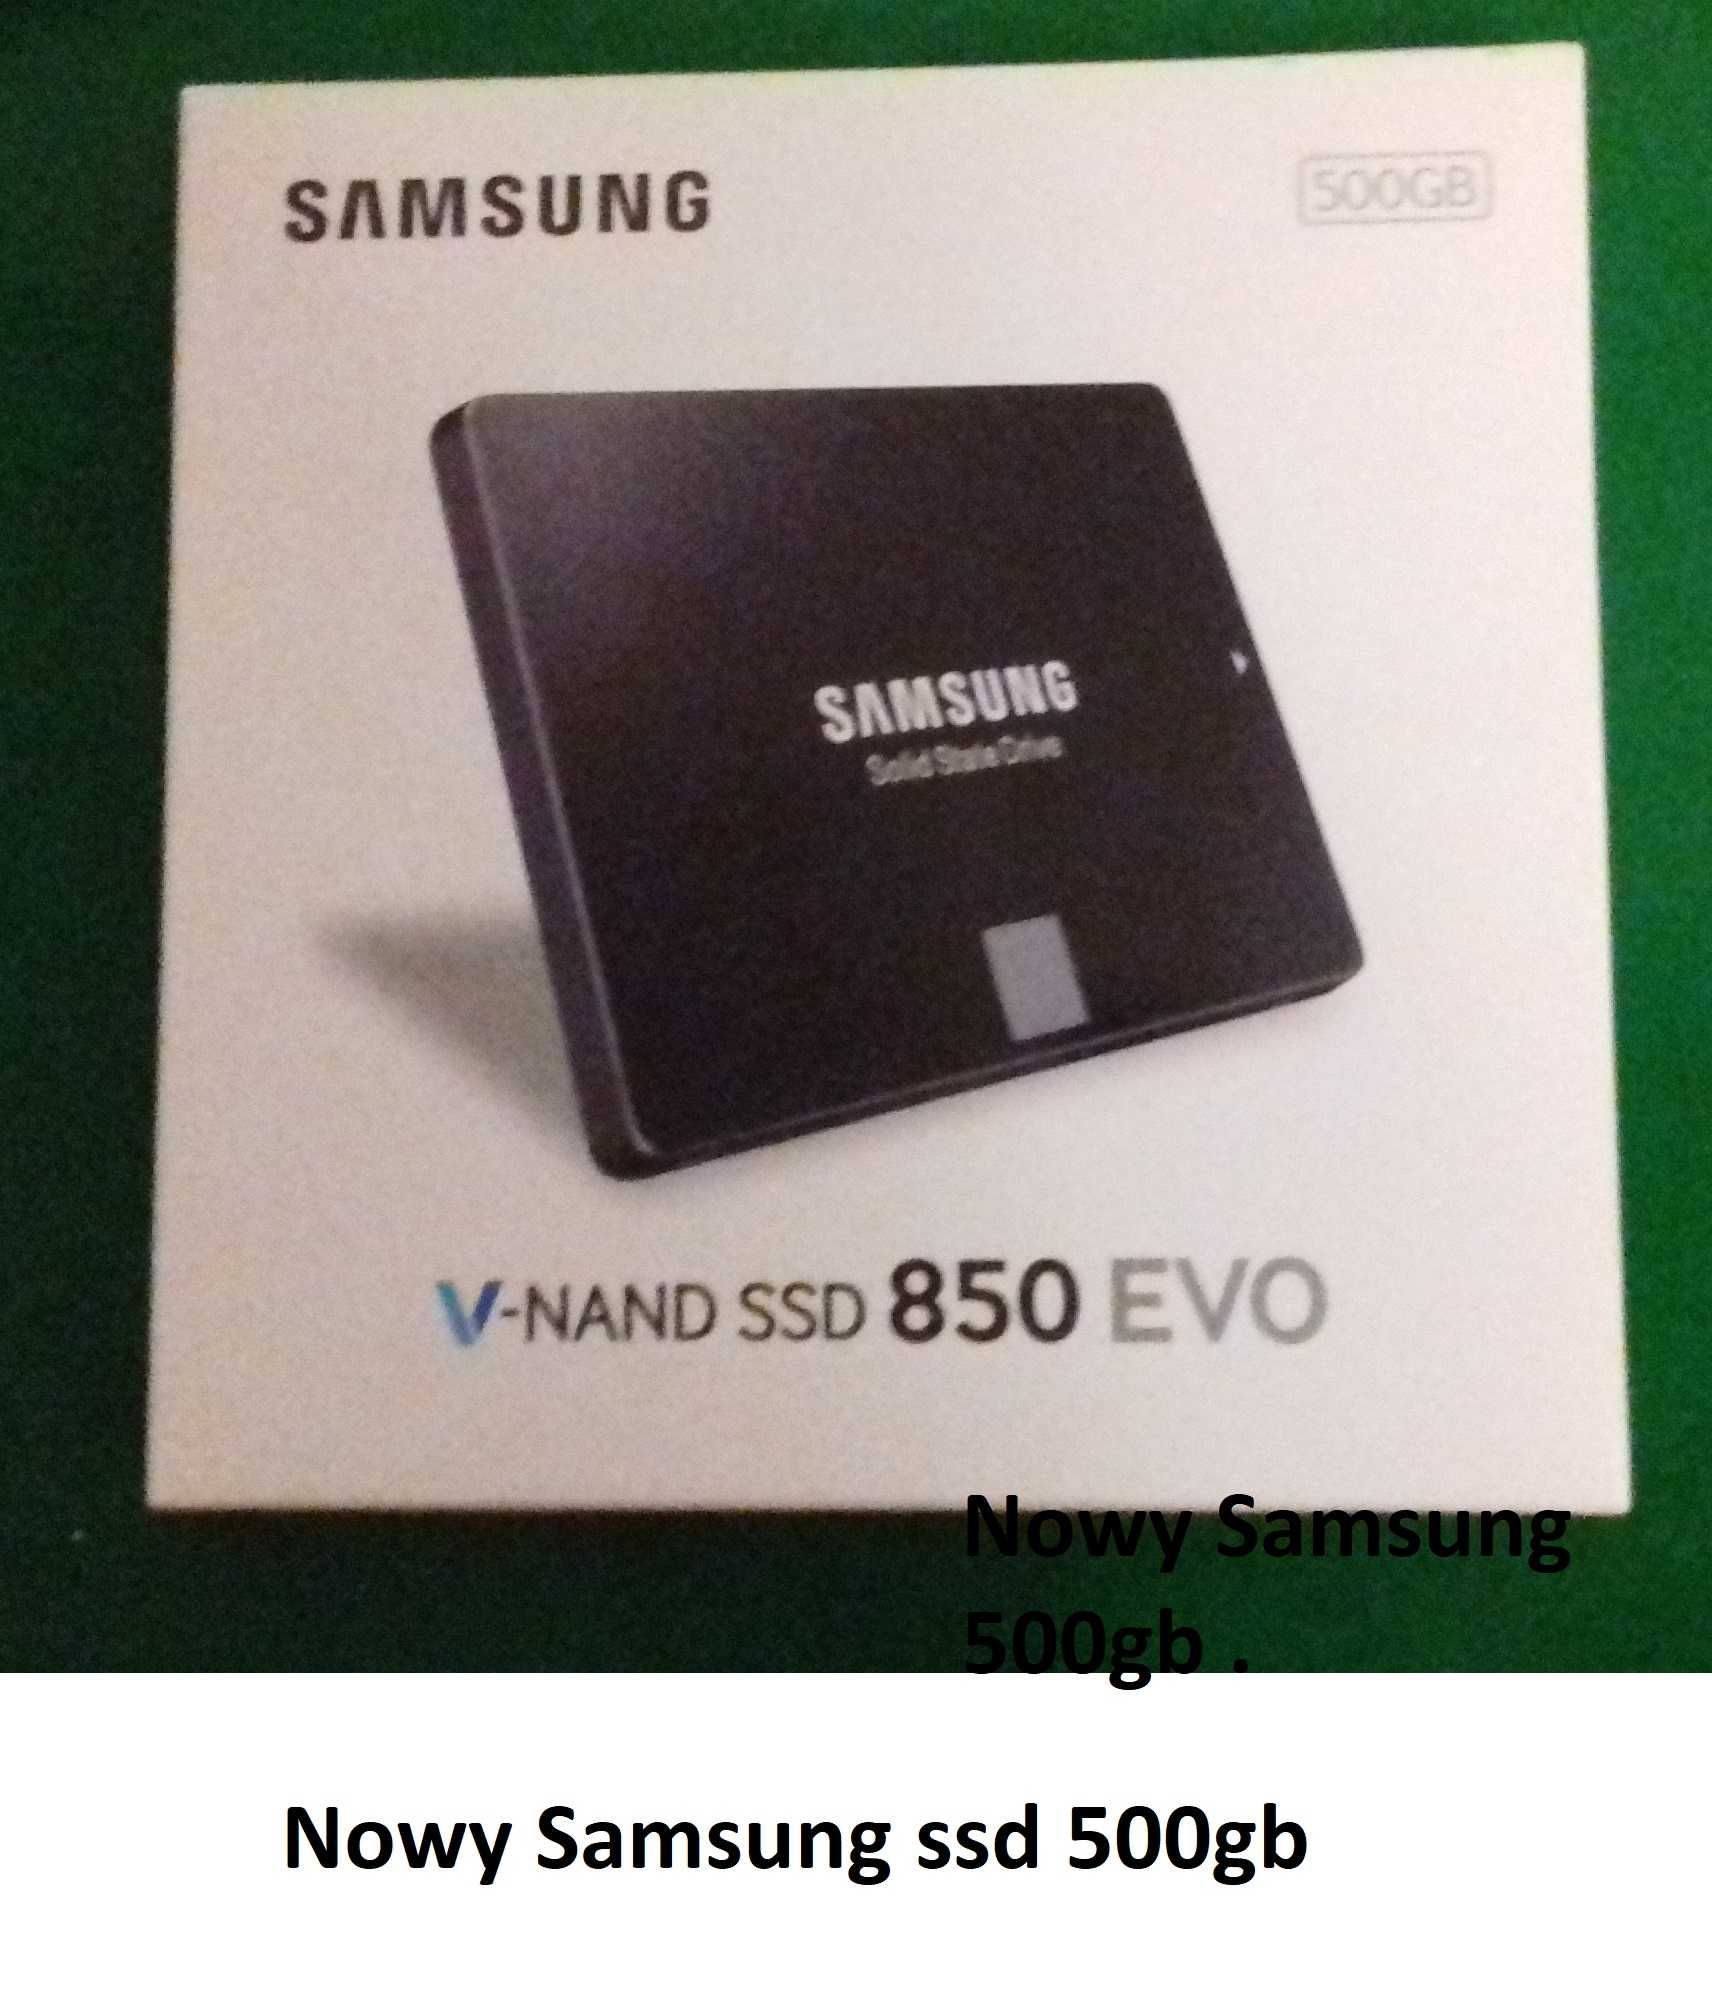 Nowy,500gb.Samsung-dysk ssd.Inne modele foto.